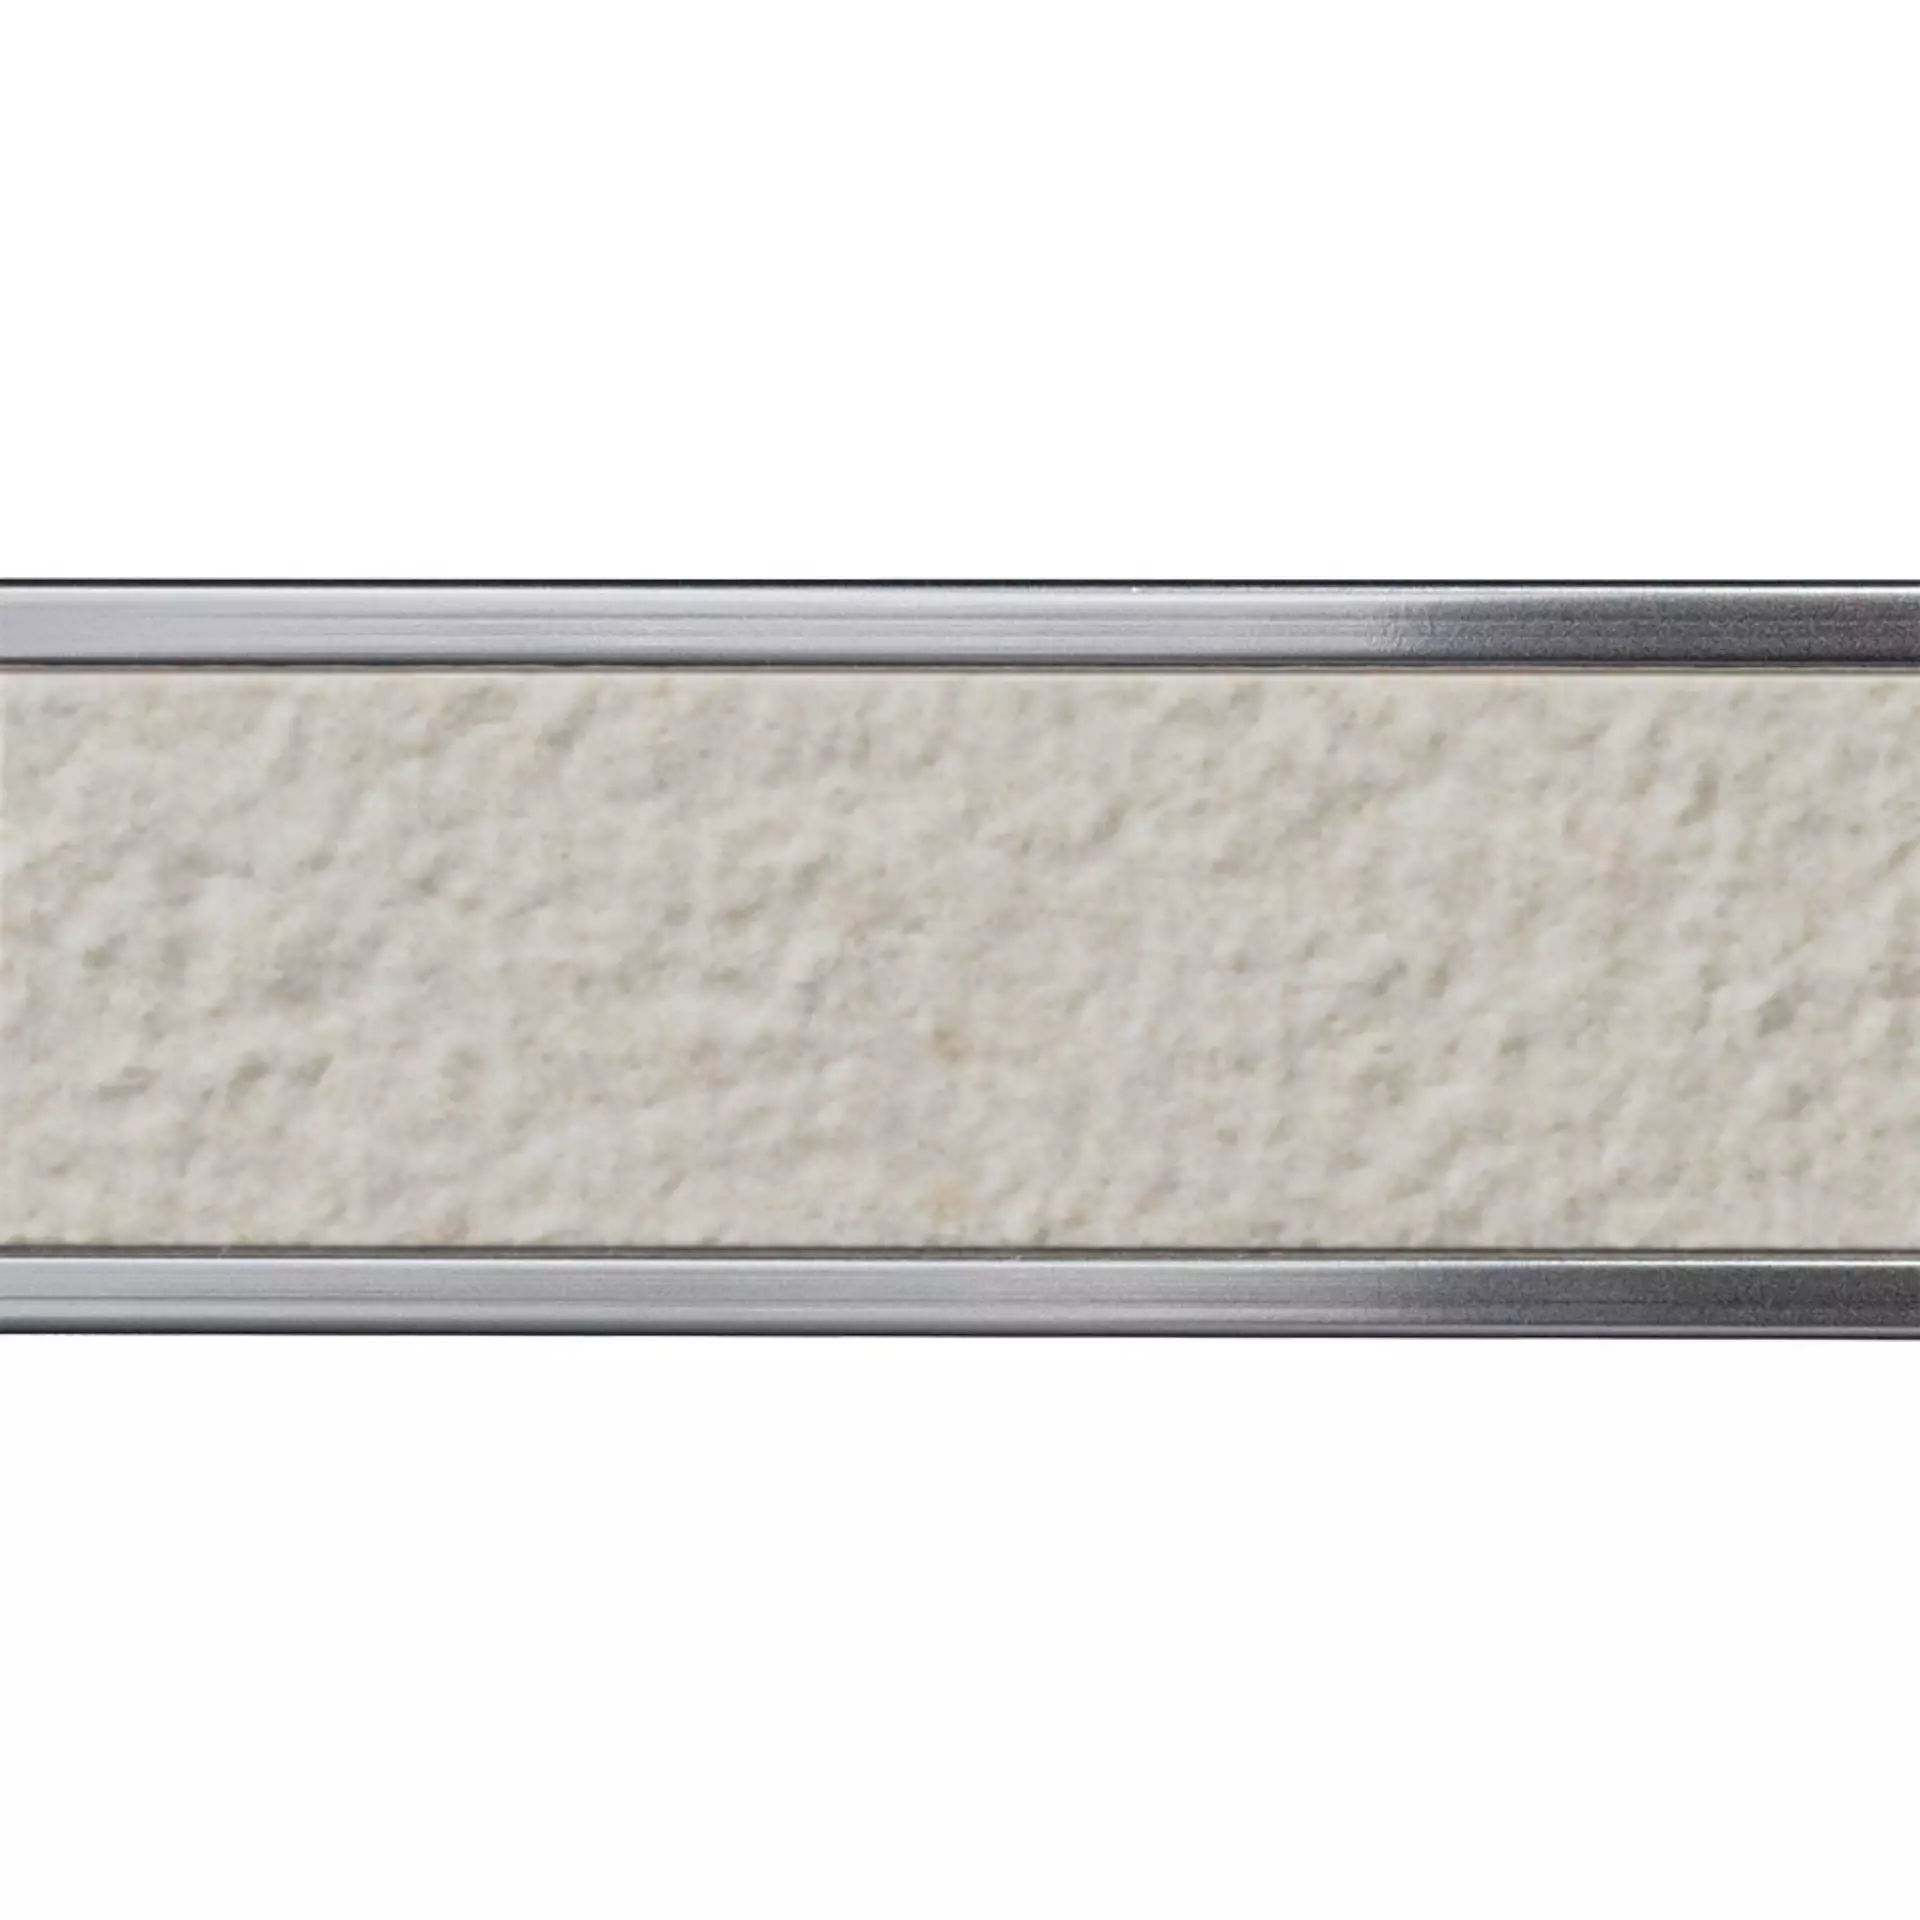 Italgraniti Silver Grain Grey Bocciardato Border Argento SI03LB1 2x120cm rectified